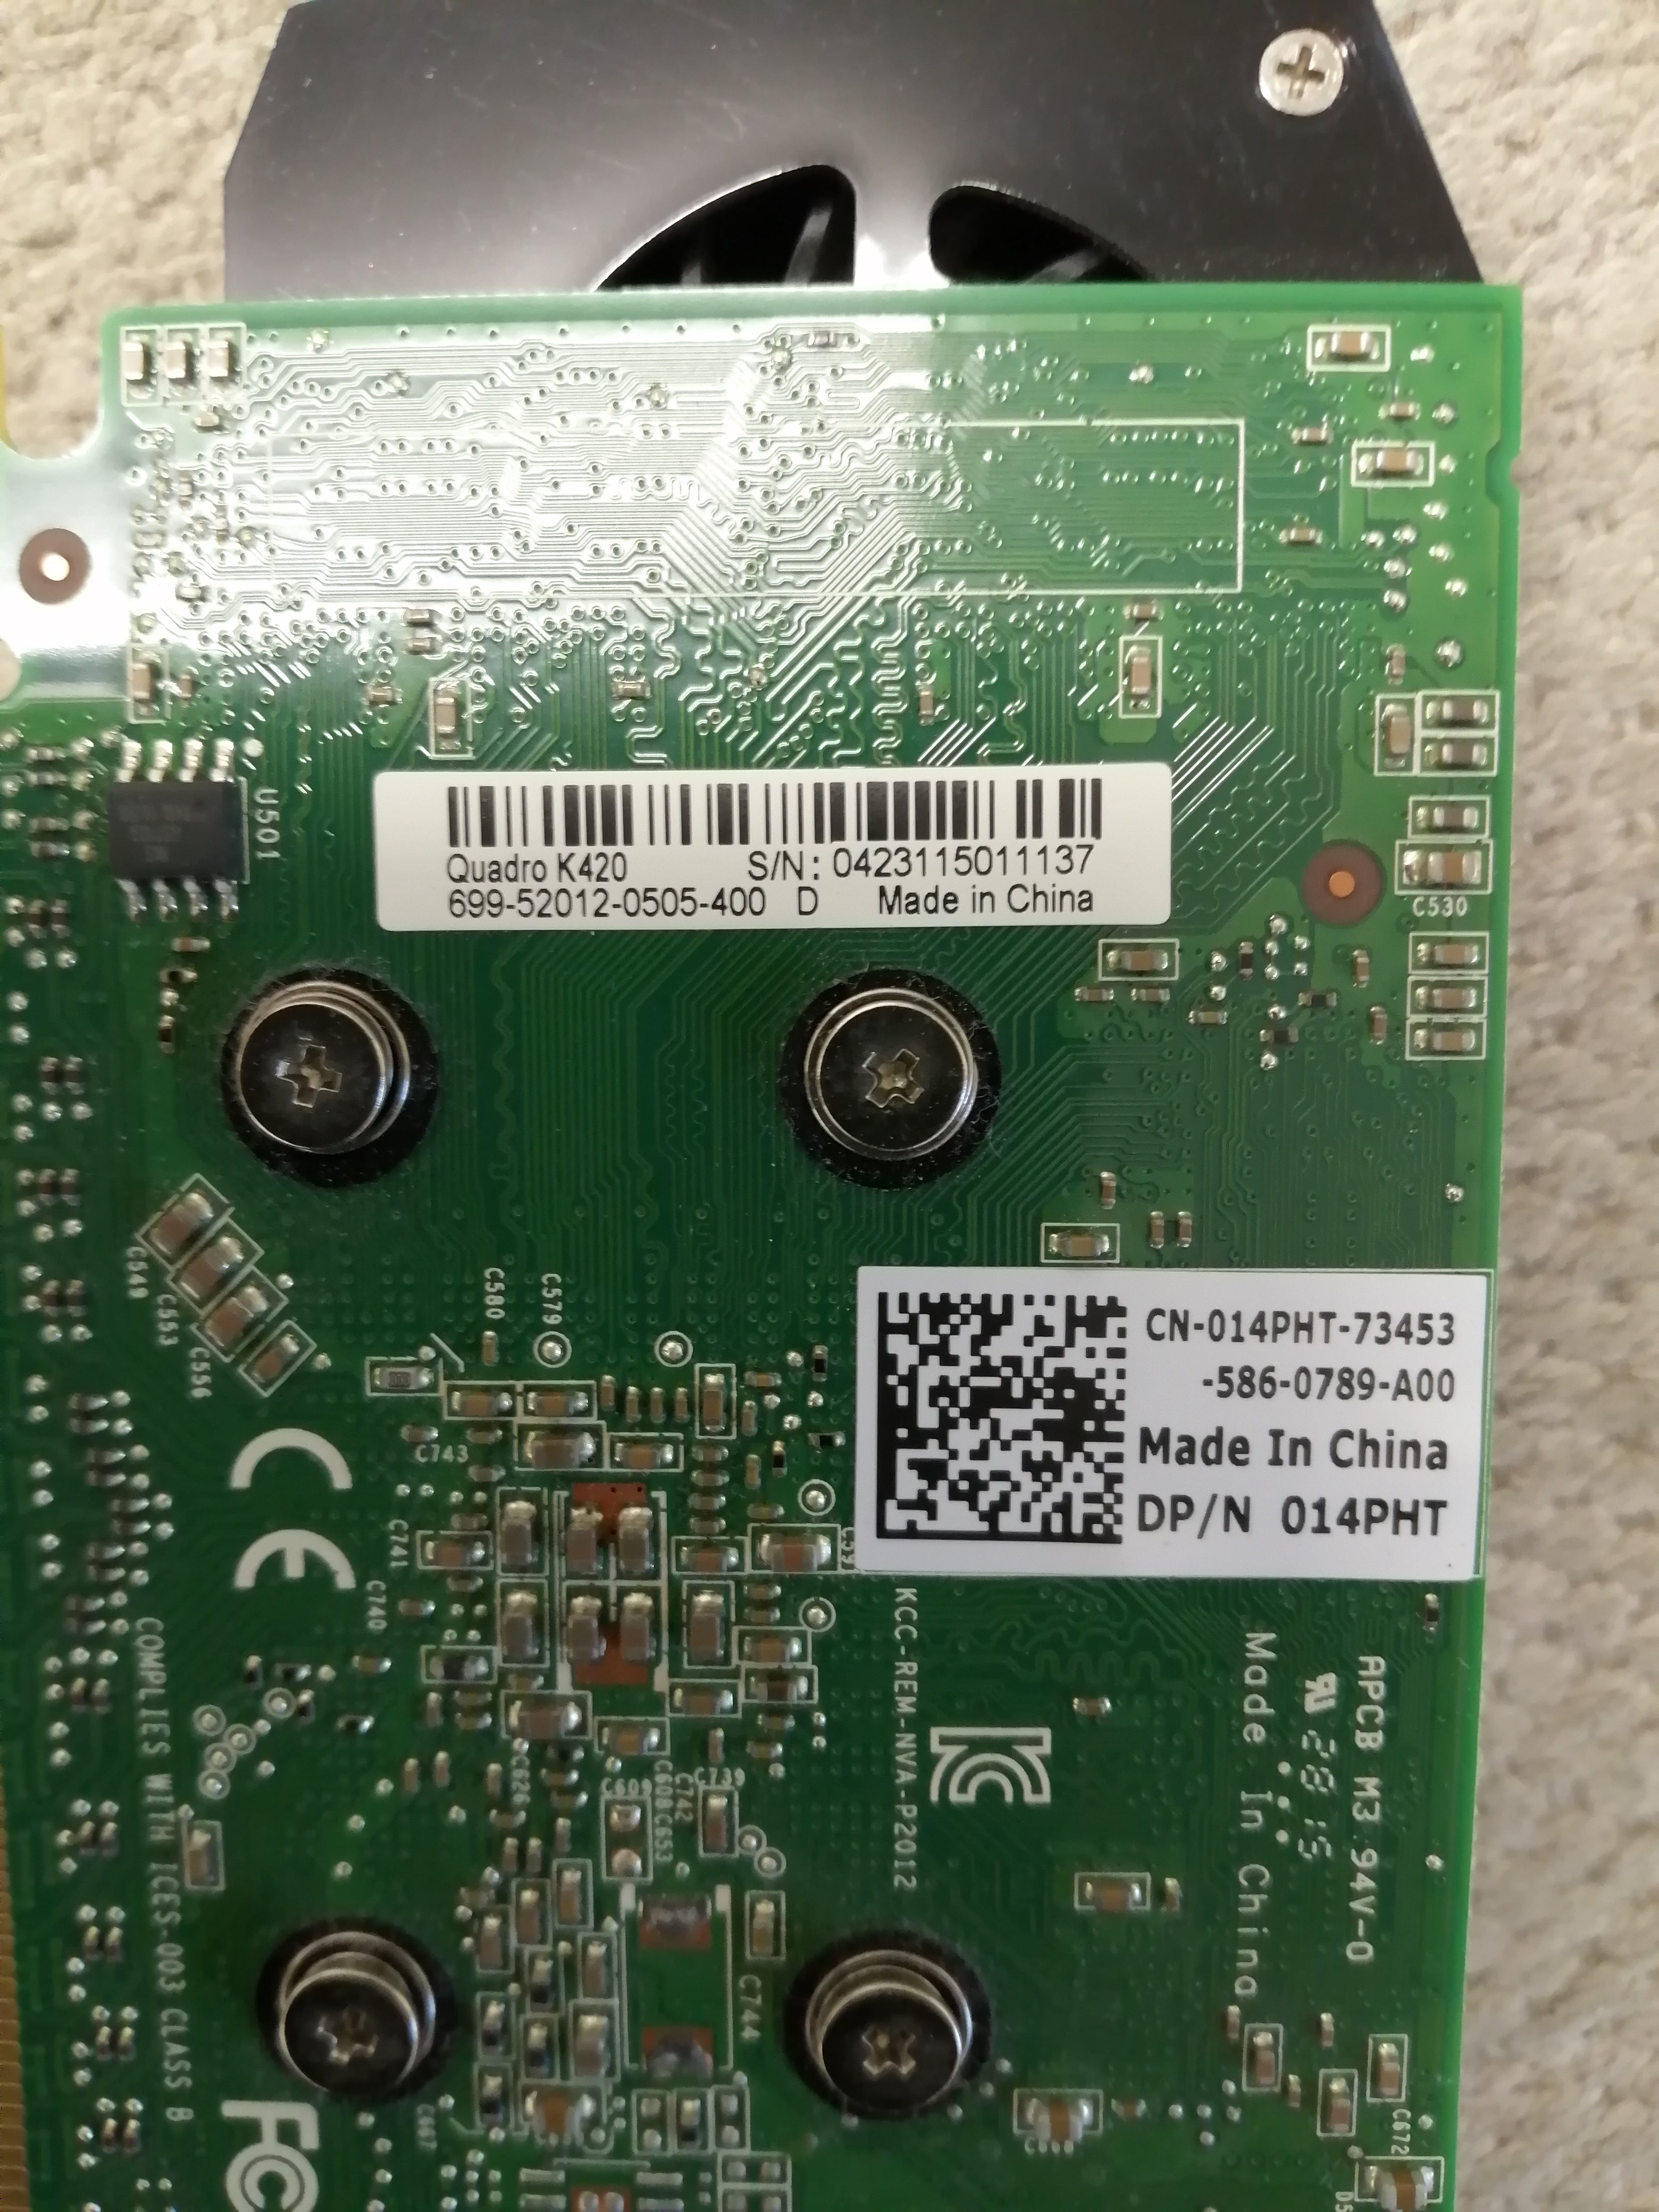 NVIDIA QUADRO GRAPHICS CARD K420 699-52012-0505-400 D (K420 USED)